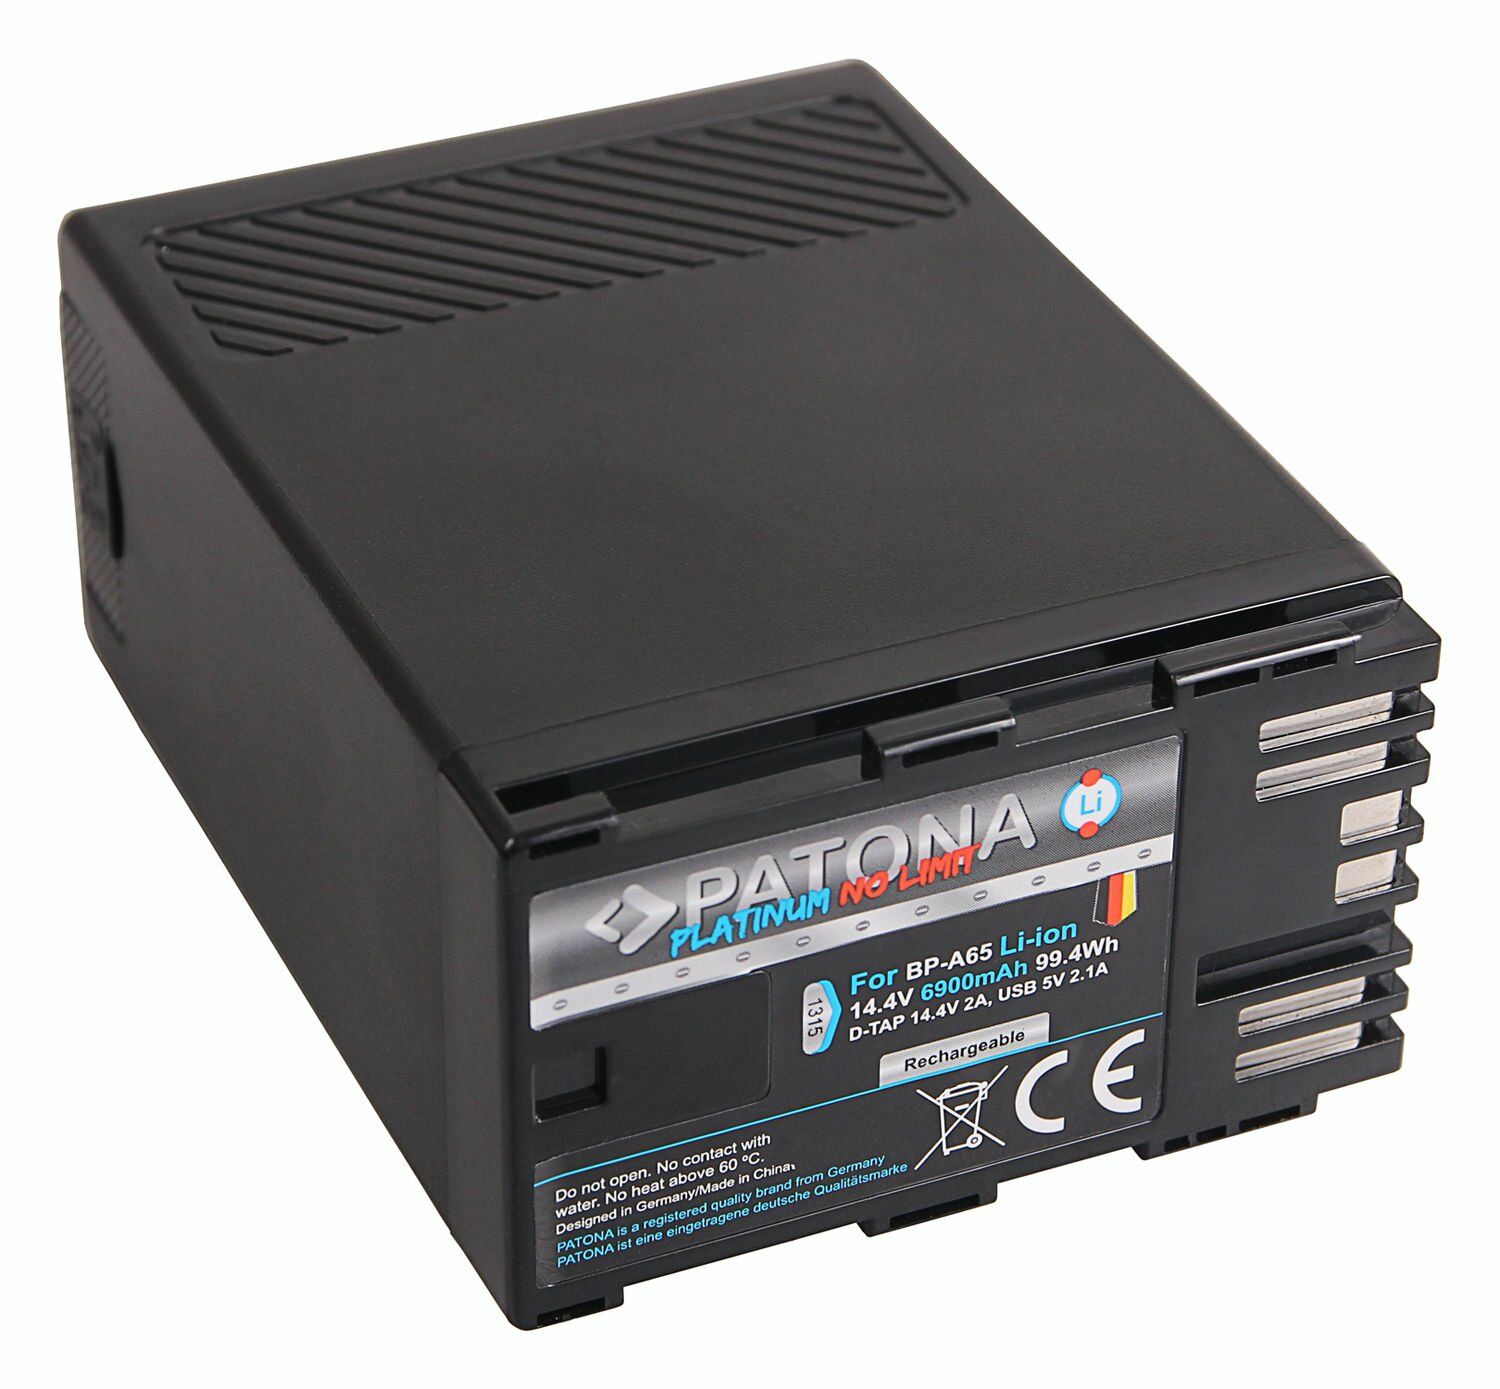 Patona 1315 Platinum Batarya (Canon BP-A65 D-Tap USB-Output)